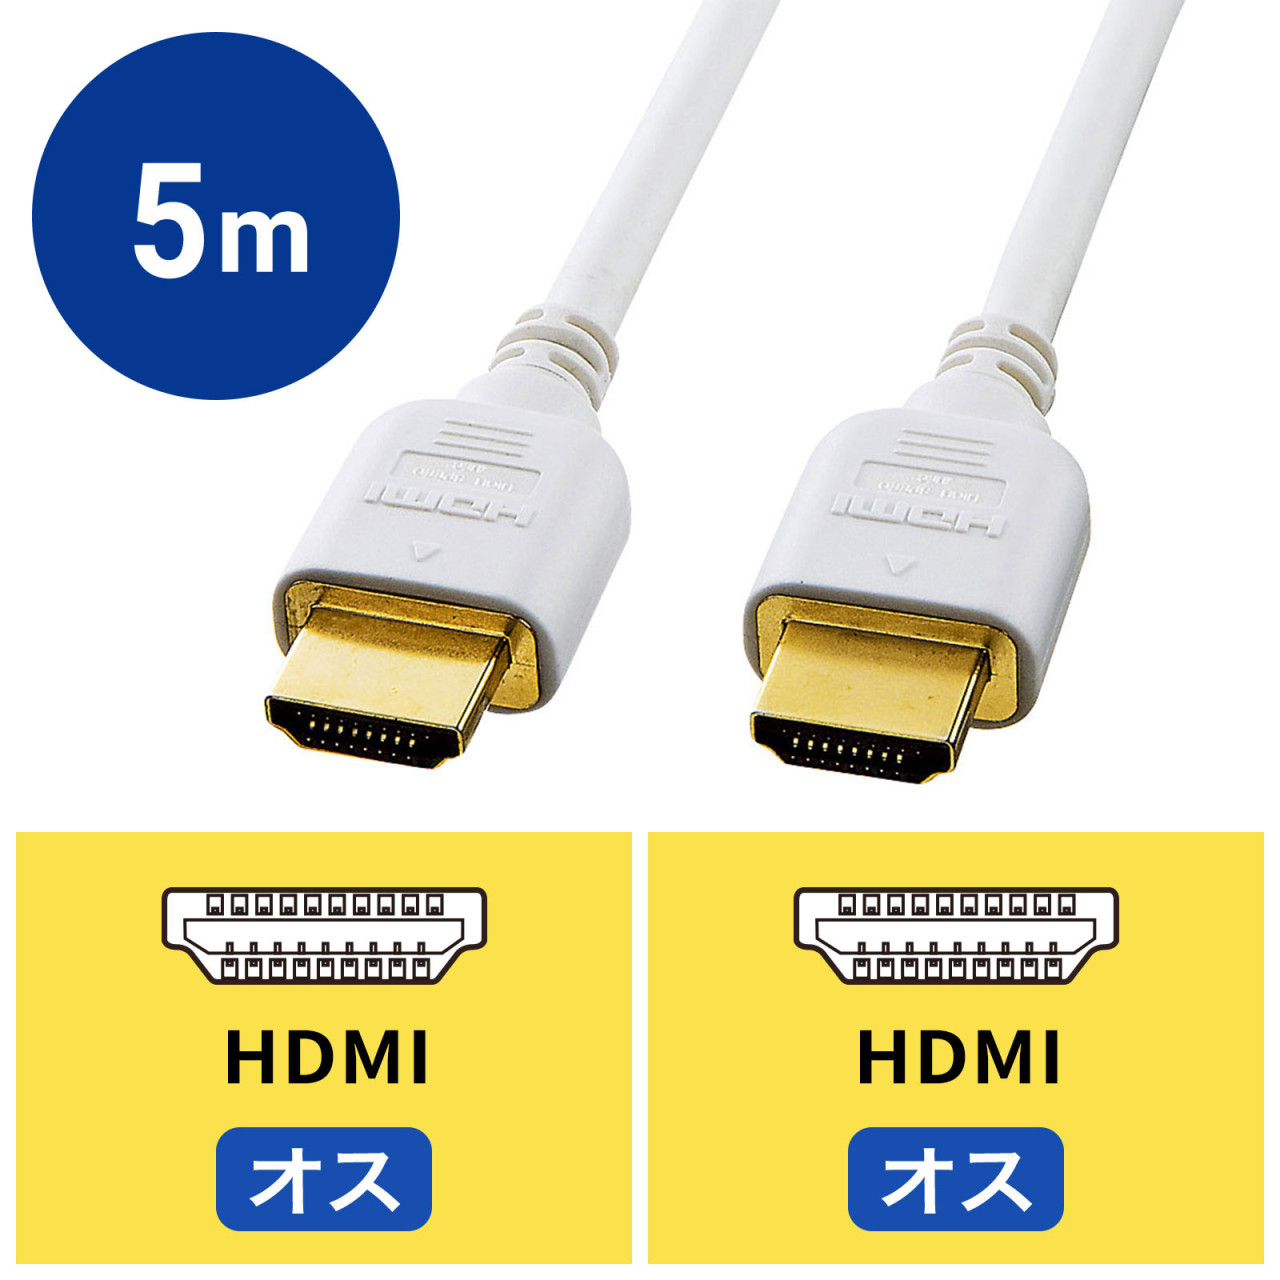 ハイスピードHDMIケーブル 5m ホワイト KM-HD20-50HWKの販売商品 |通販ならサンワダイレクト